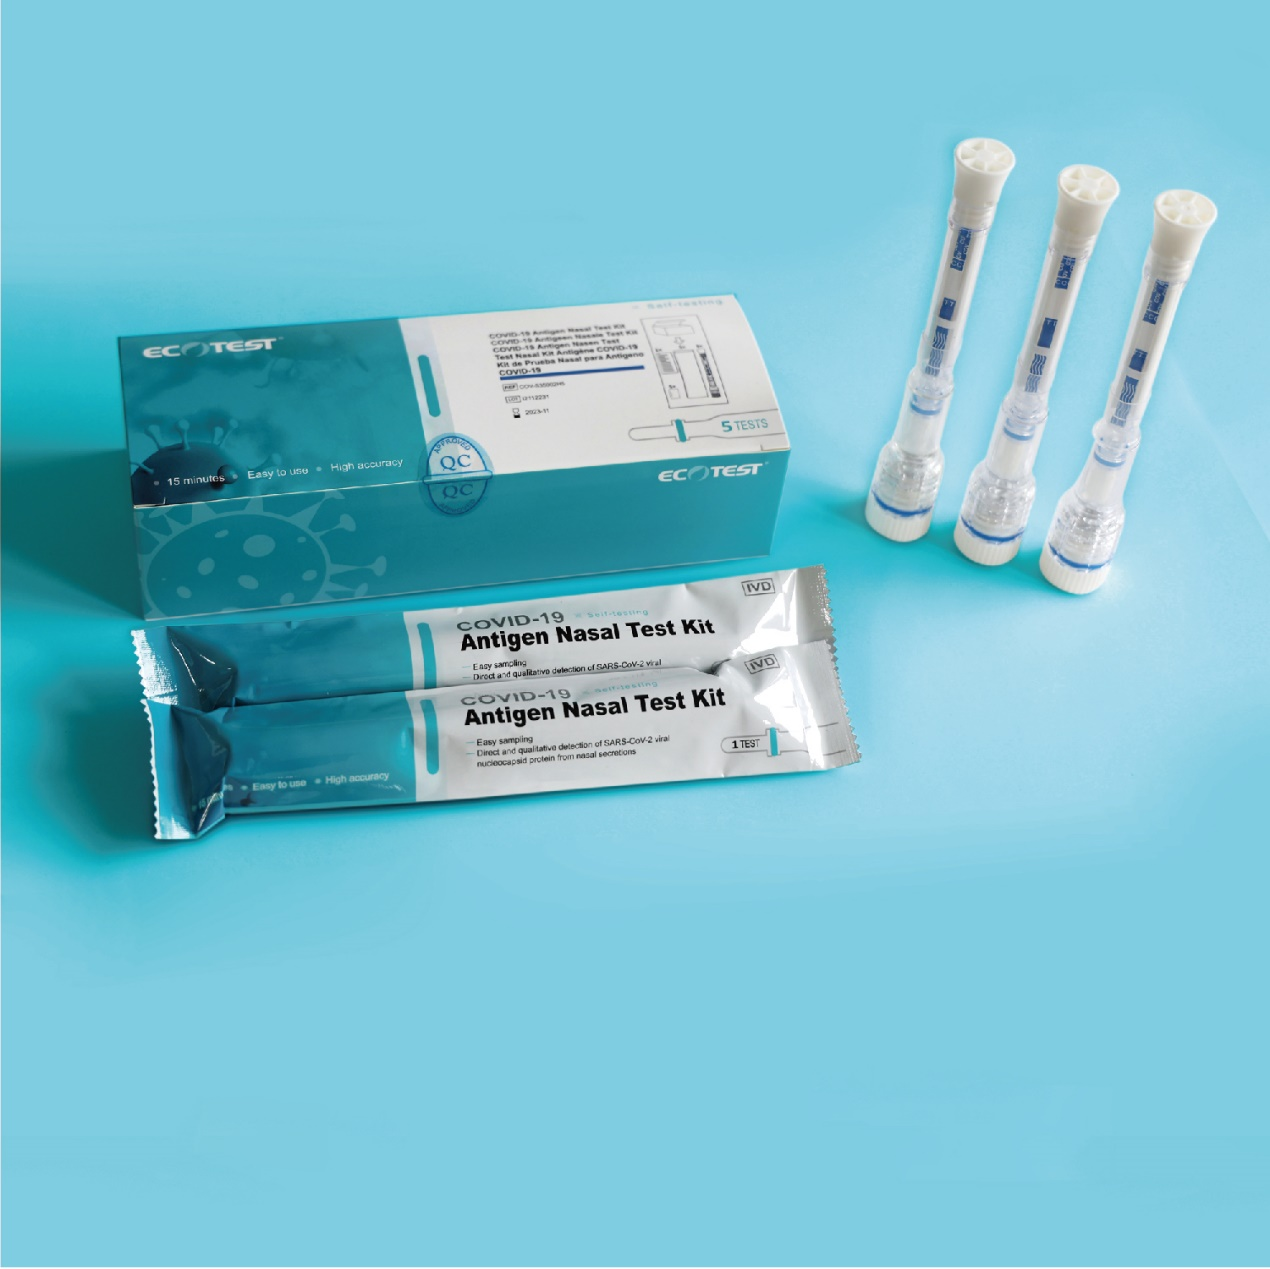 COVID-19 Antigen Nasal Test Kit